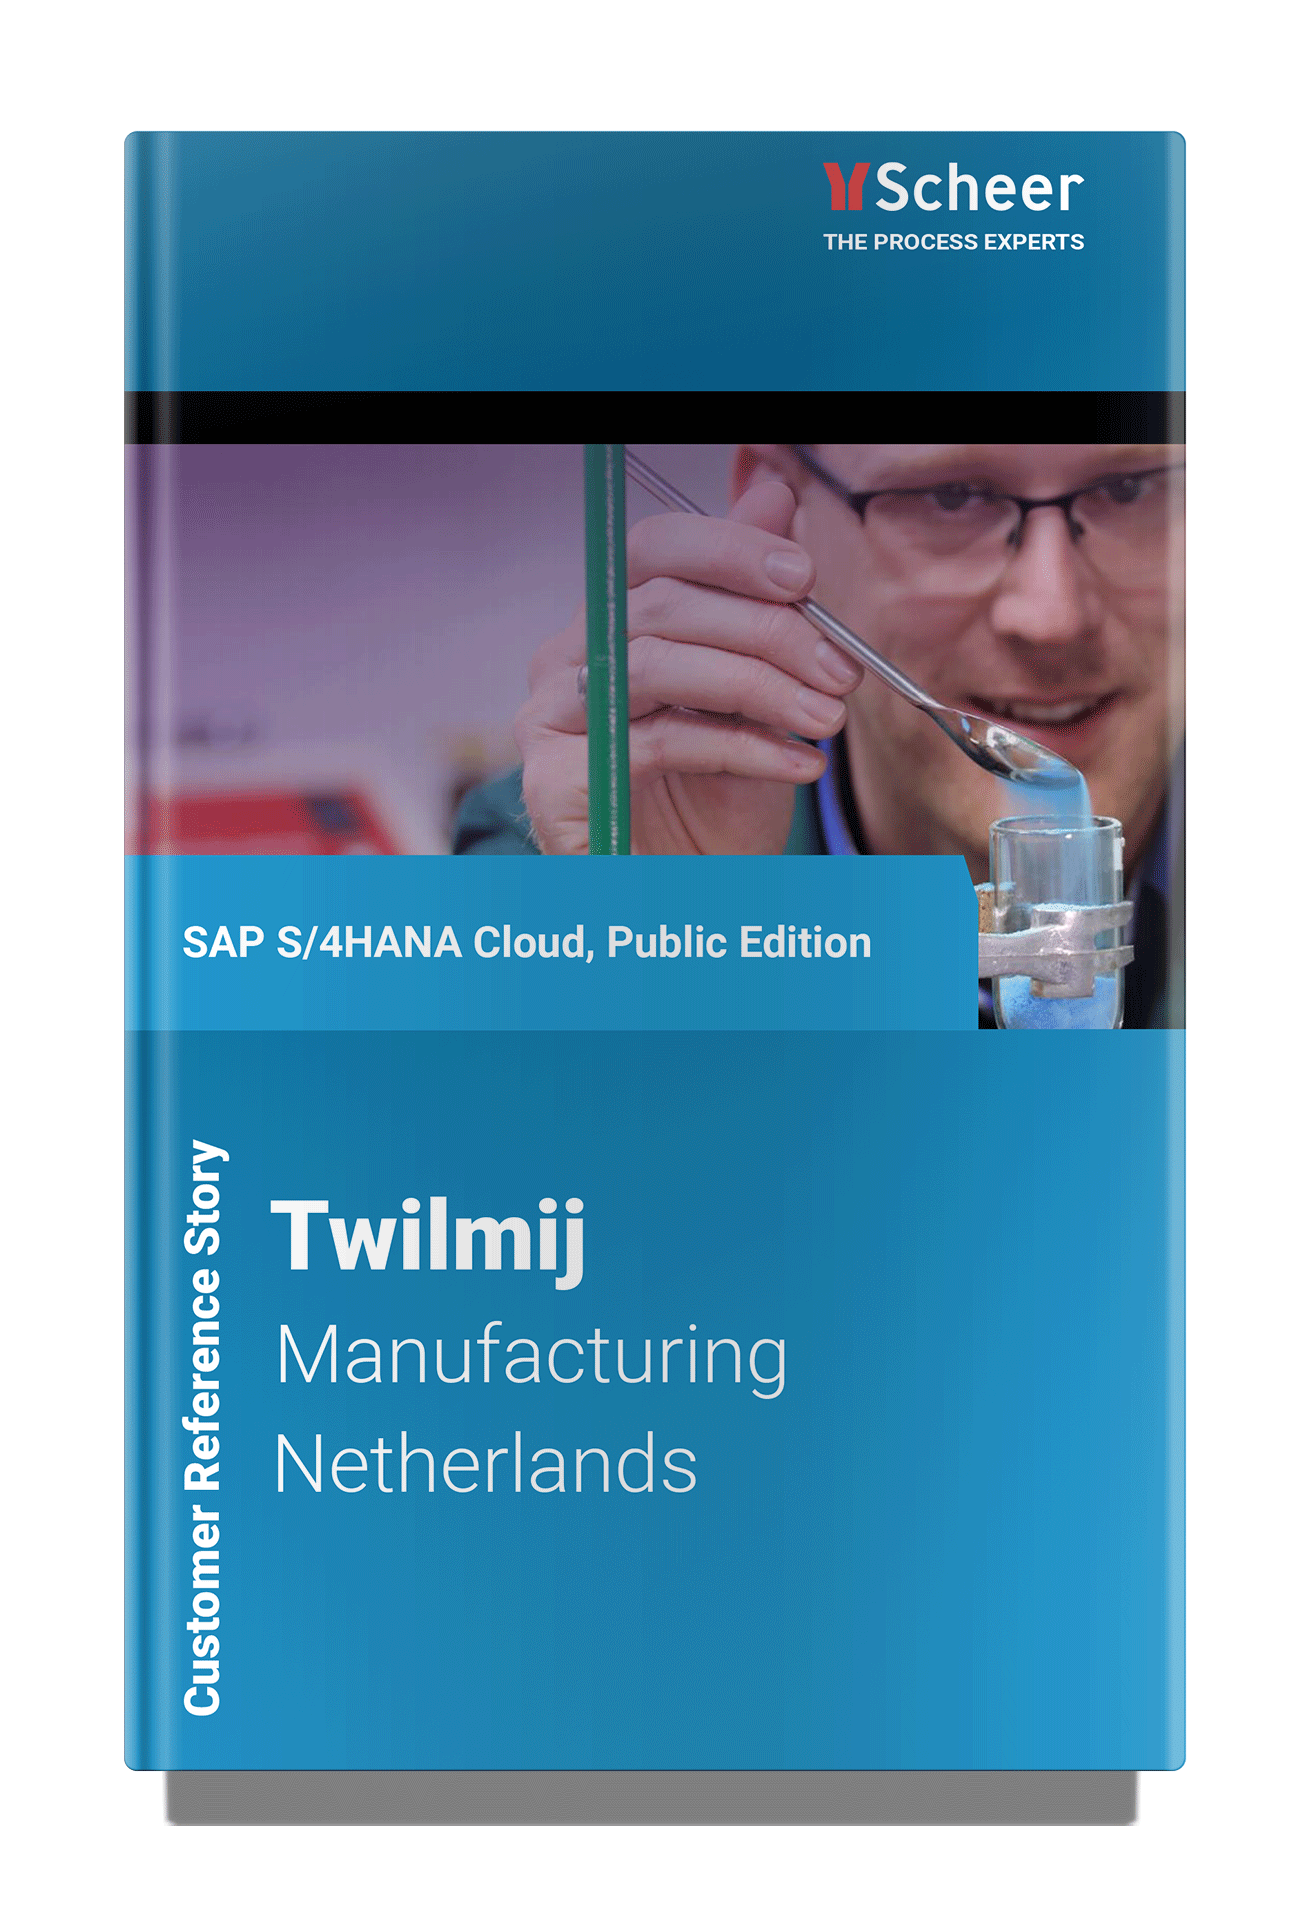 DSM Twilmij referentie project SAP S/4HANA Cloud, Public Edition